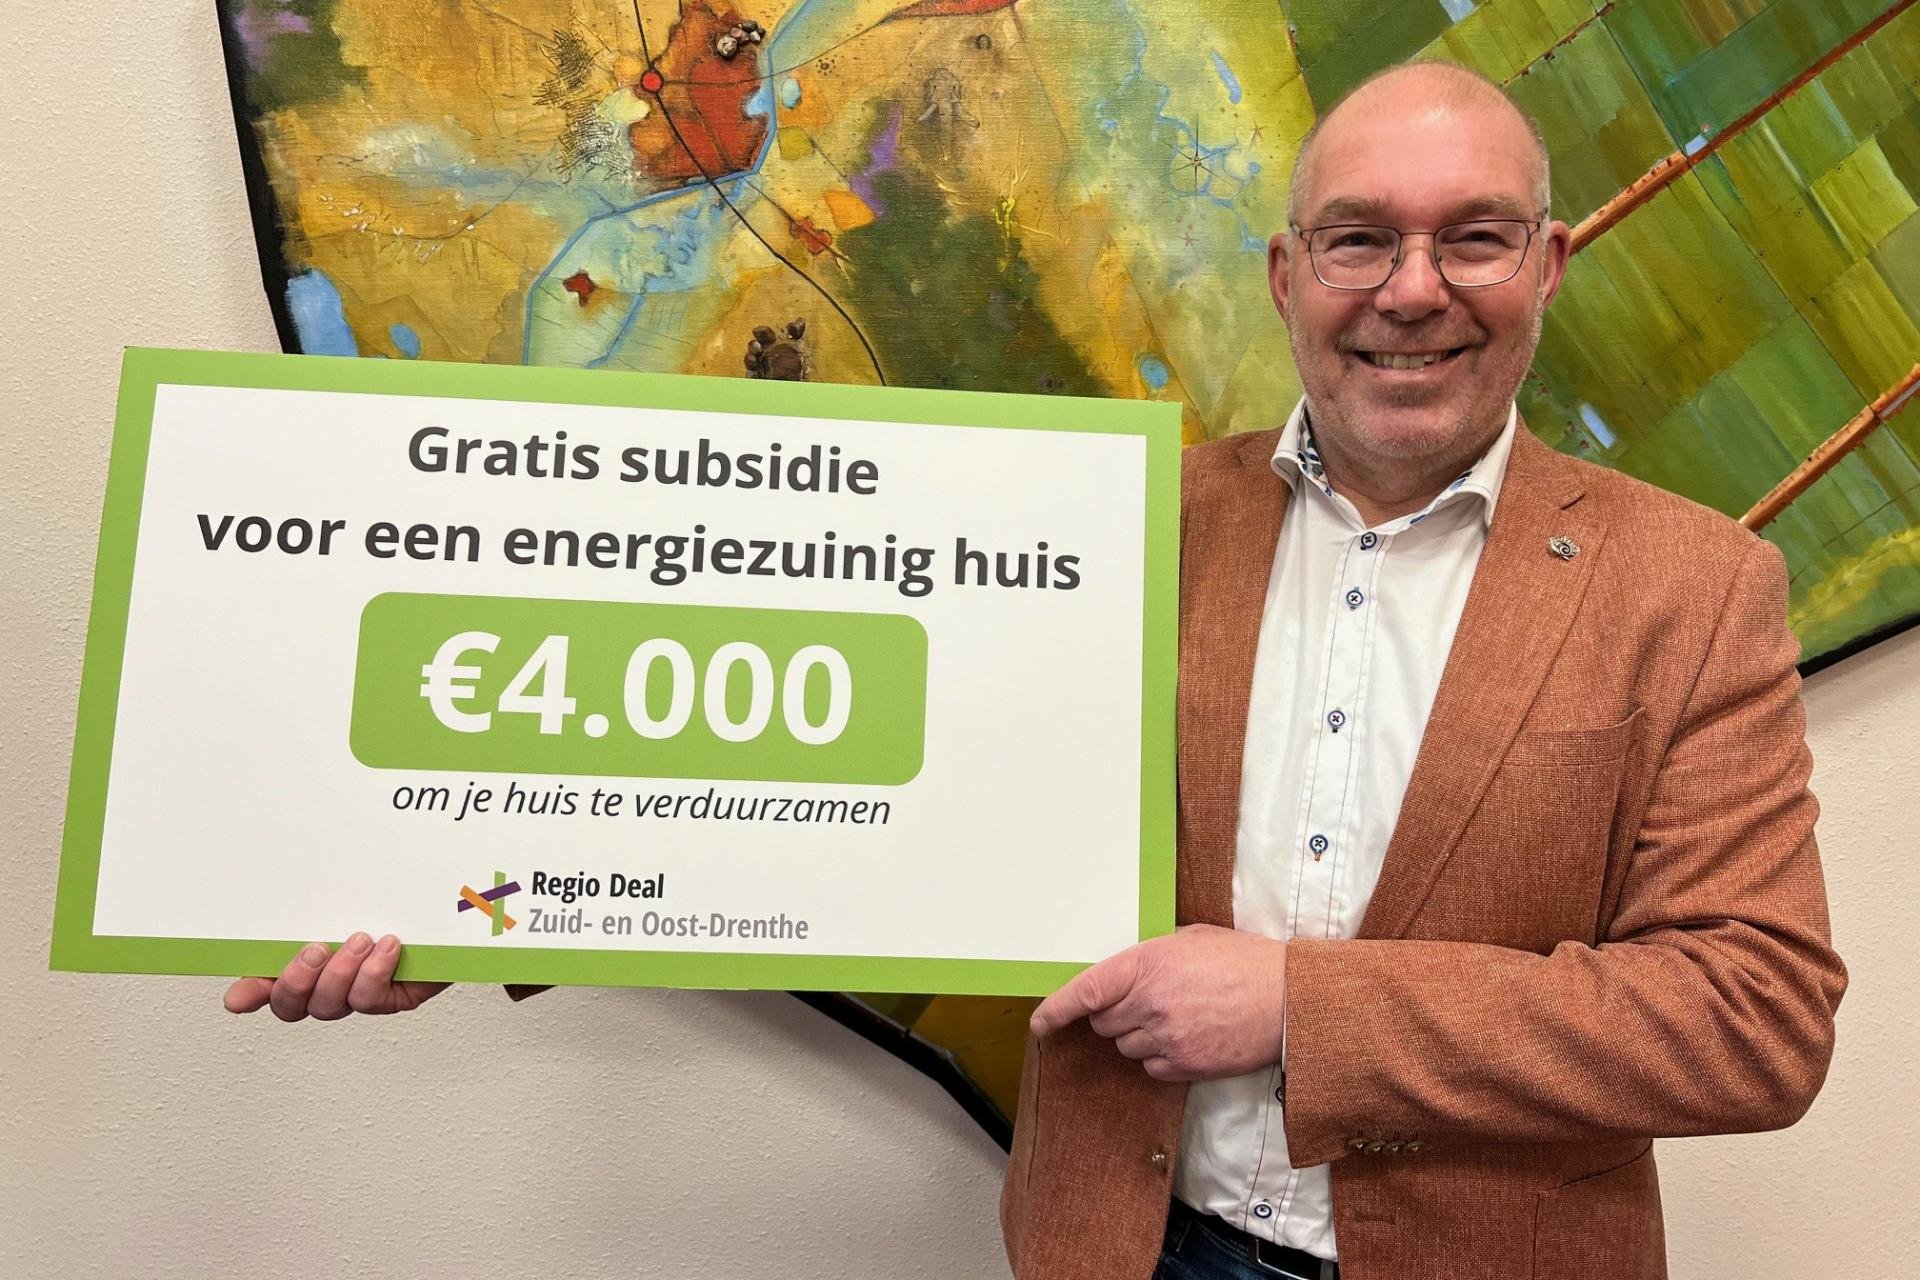 Wethouder Henk Zwiep toont cheque van 4.000 euro gratis subsidie voor energiezuinig huis